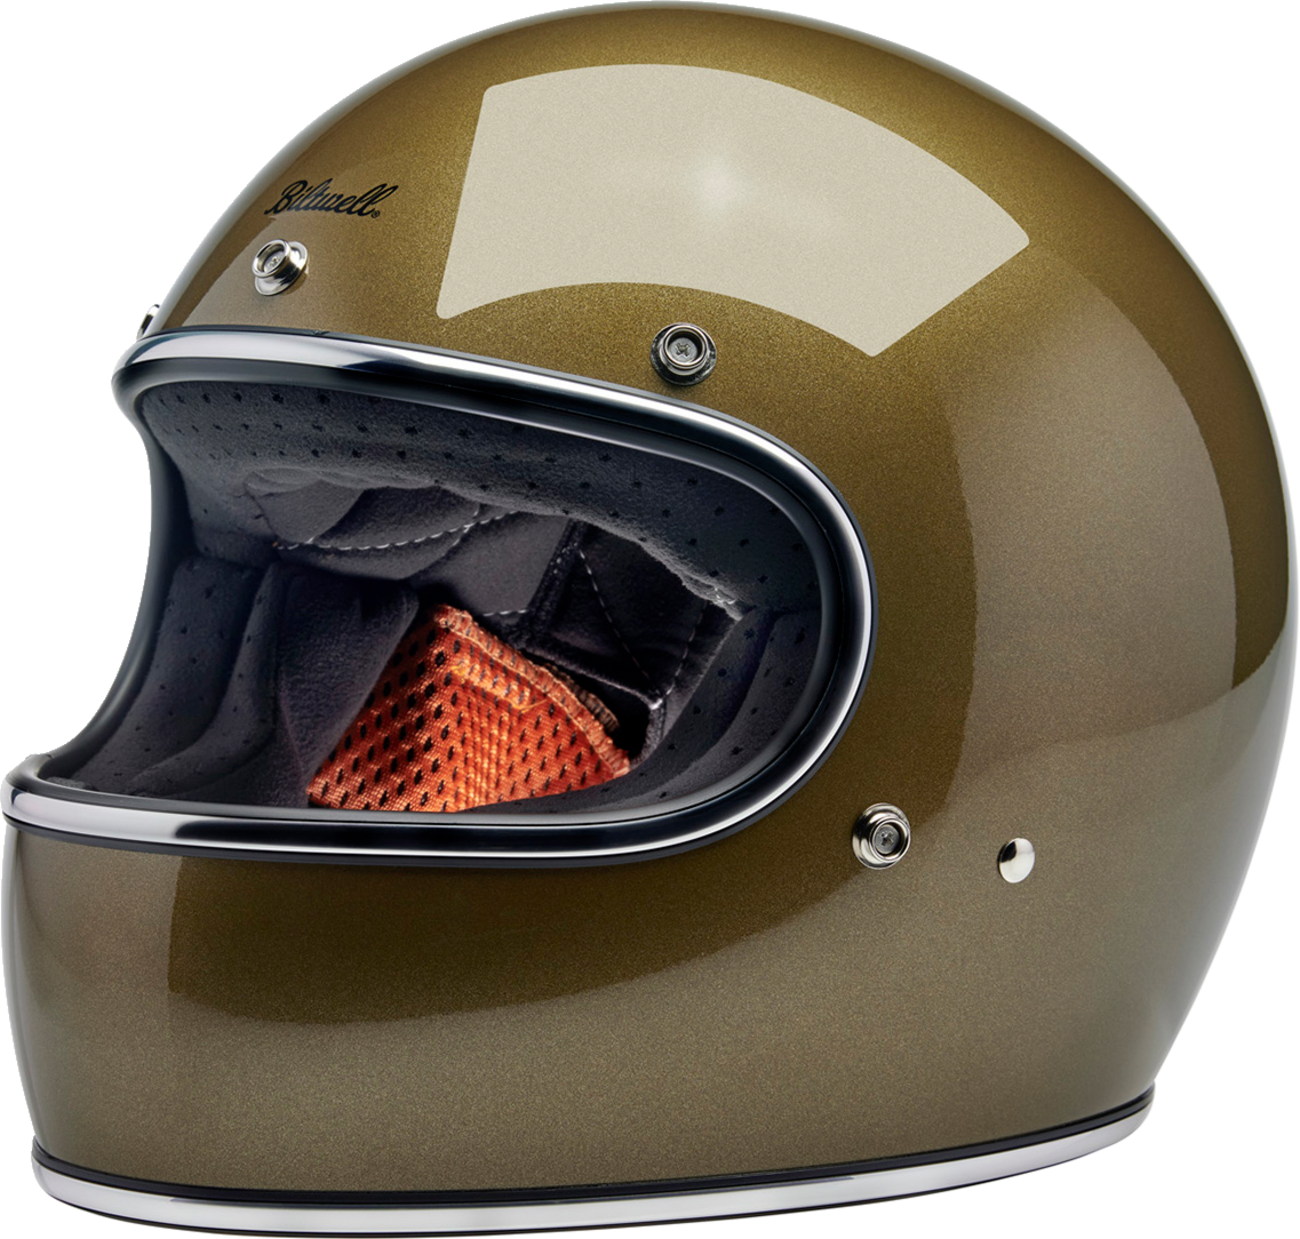 BILTWELL Gringo Helmet - Ugly Gold - 2XL 1002-363-506